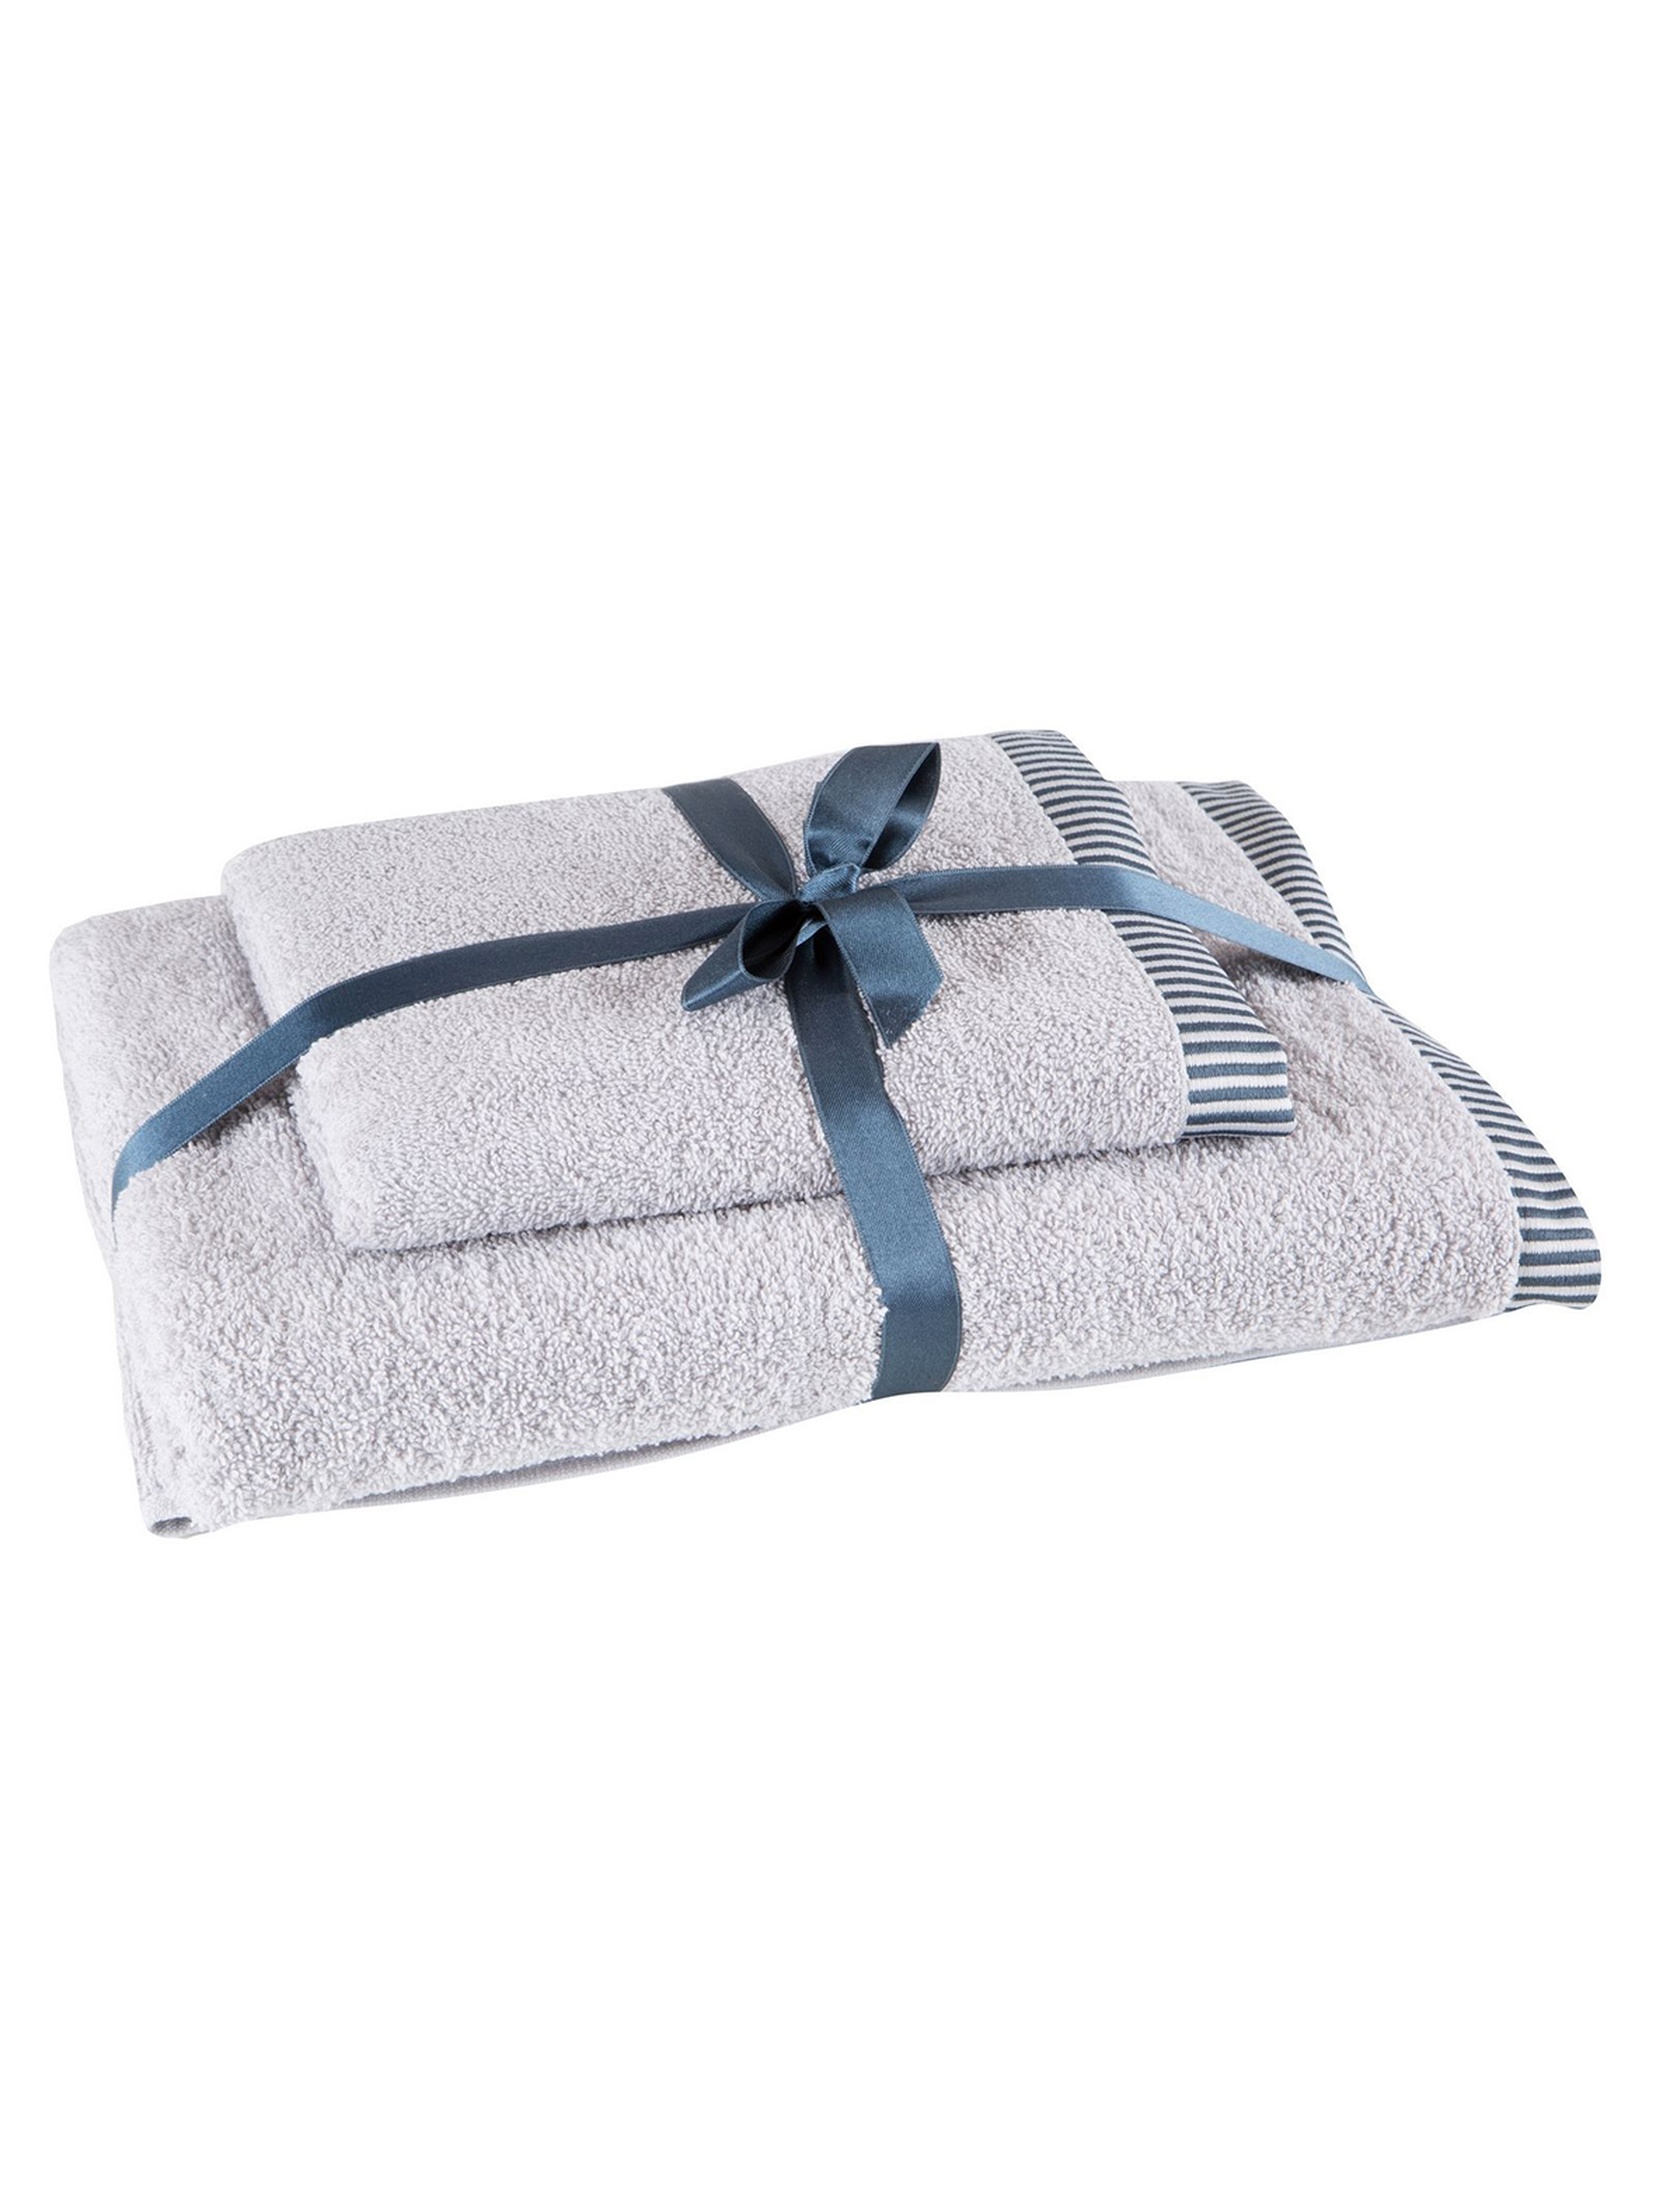 Komplet ręczników KOS 50 x 90 cm + 70 x 140 cm srebrny